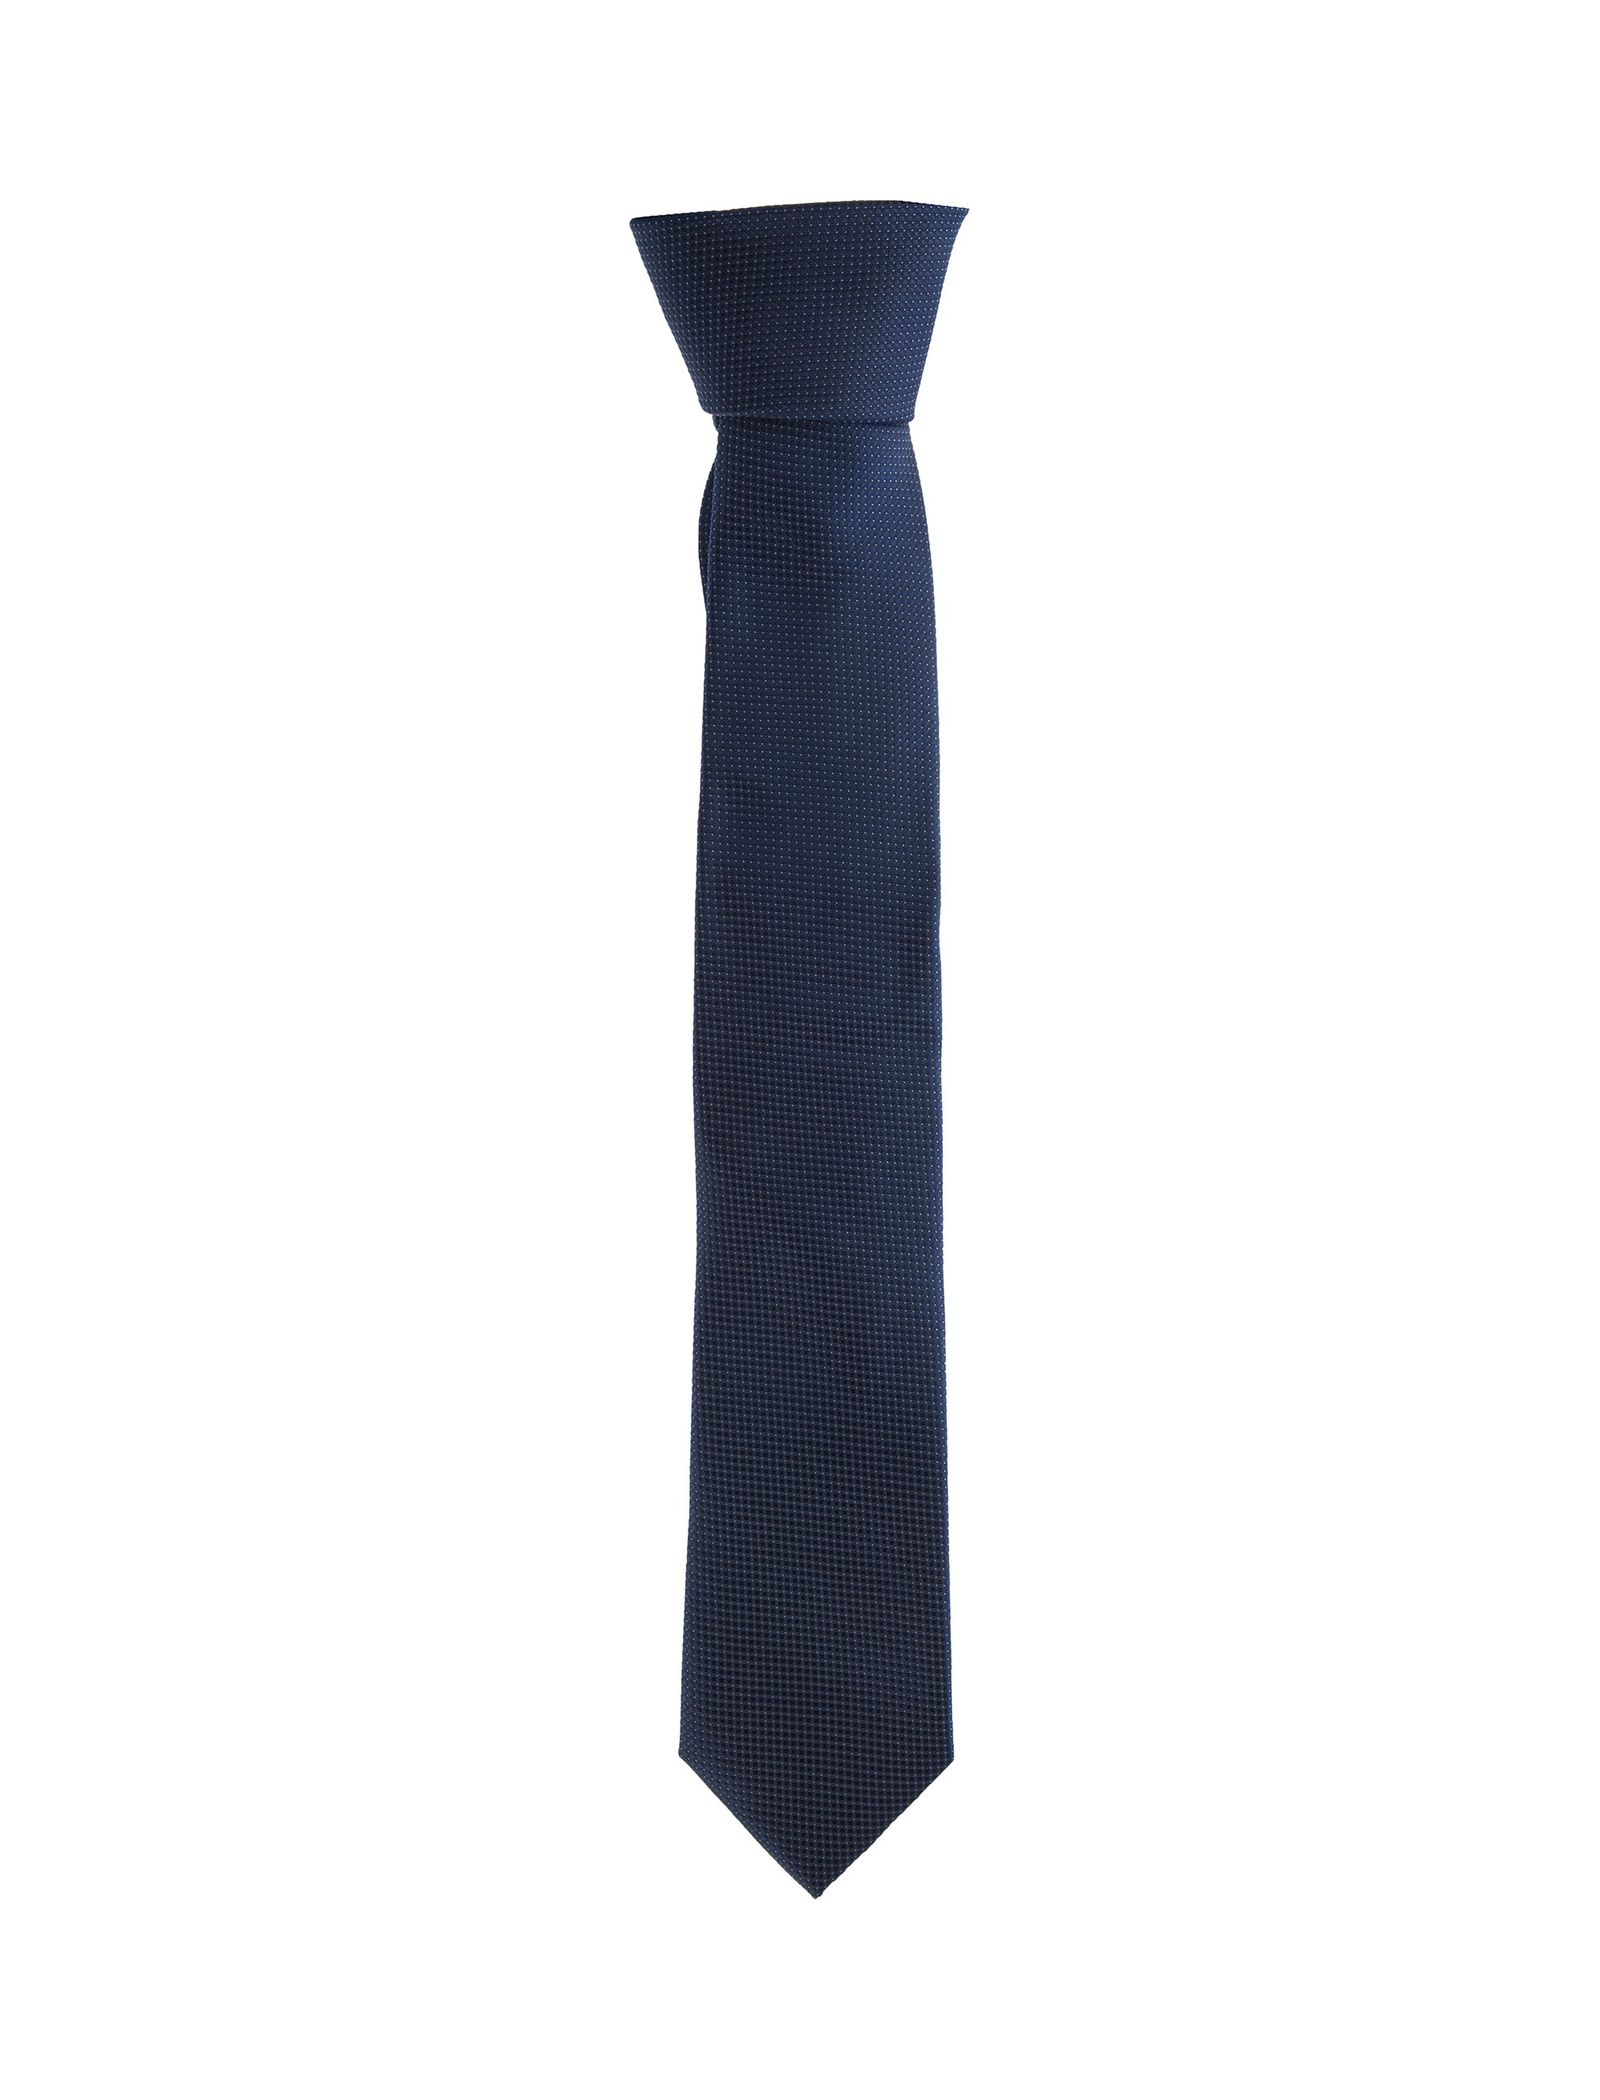 کراوات طرح دار مردانه - یوپیم - سرمه اي - 2